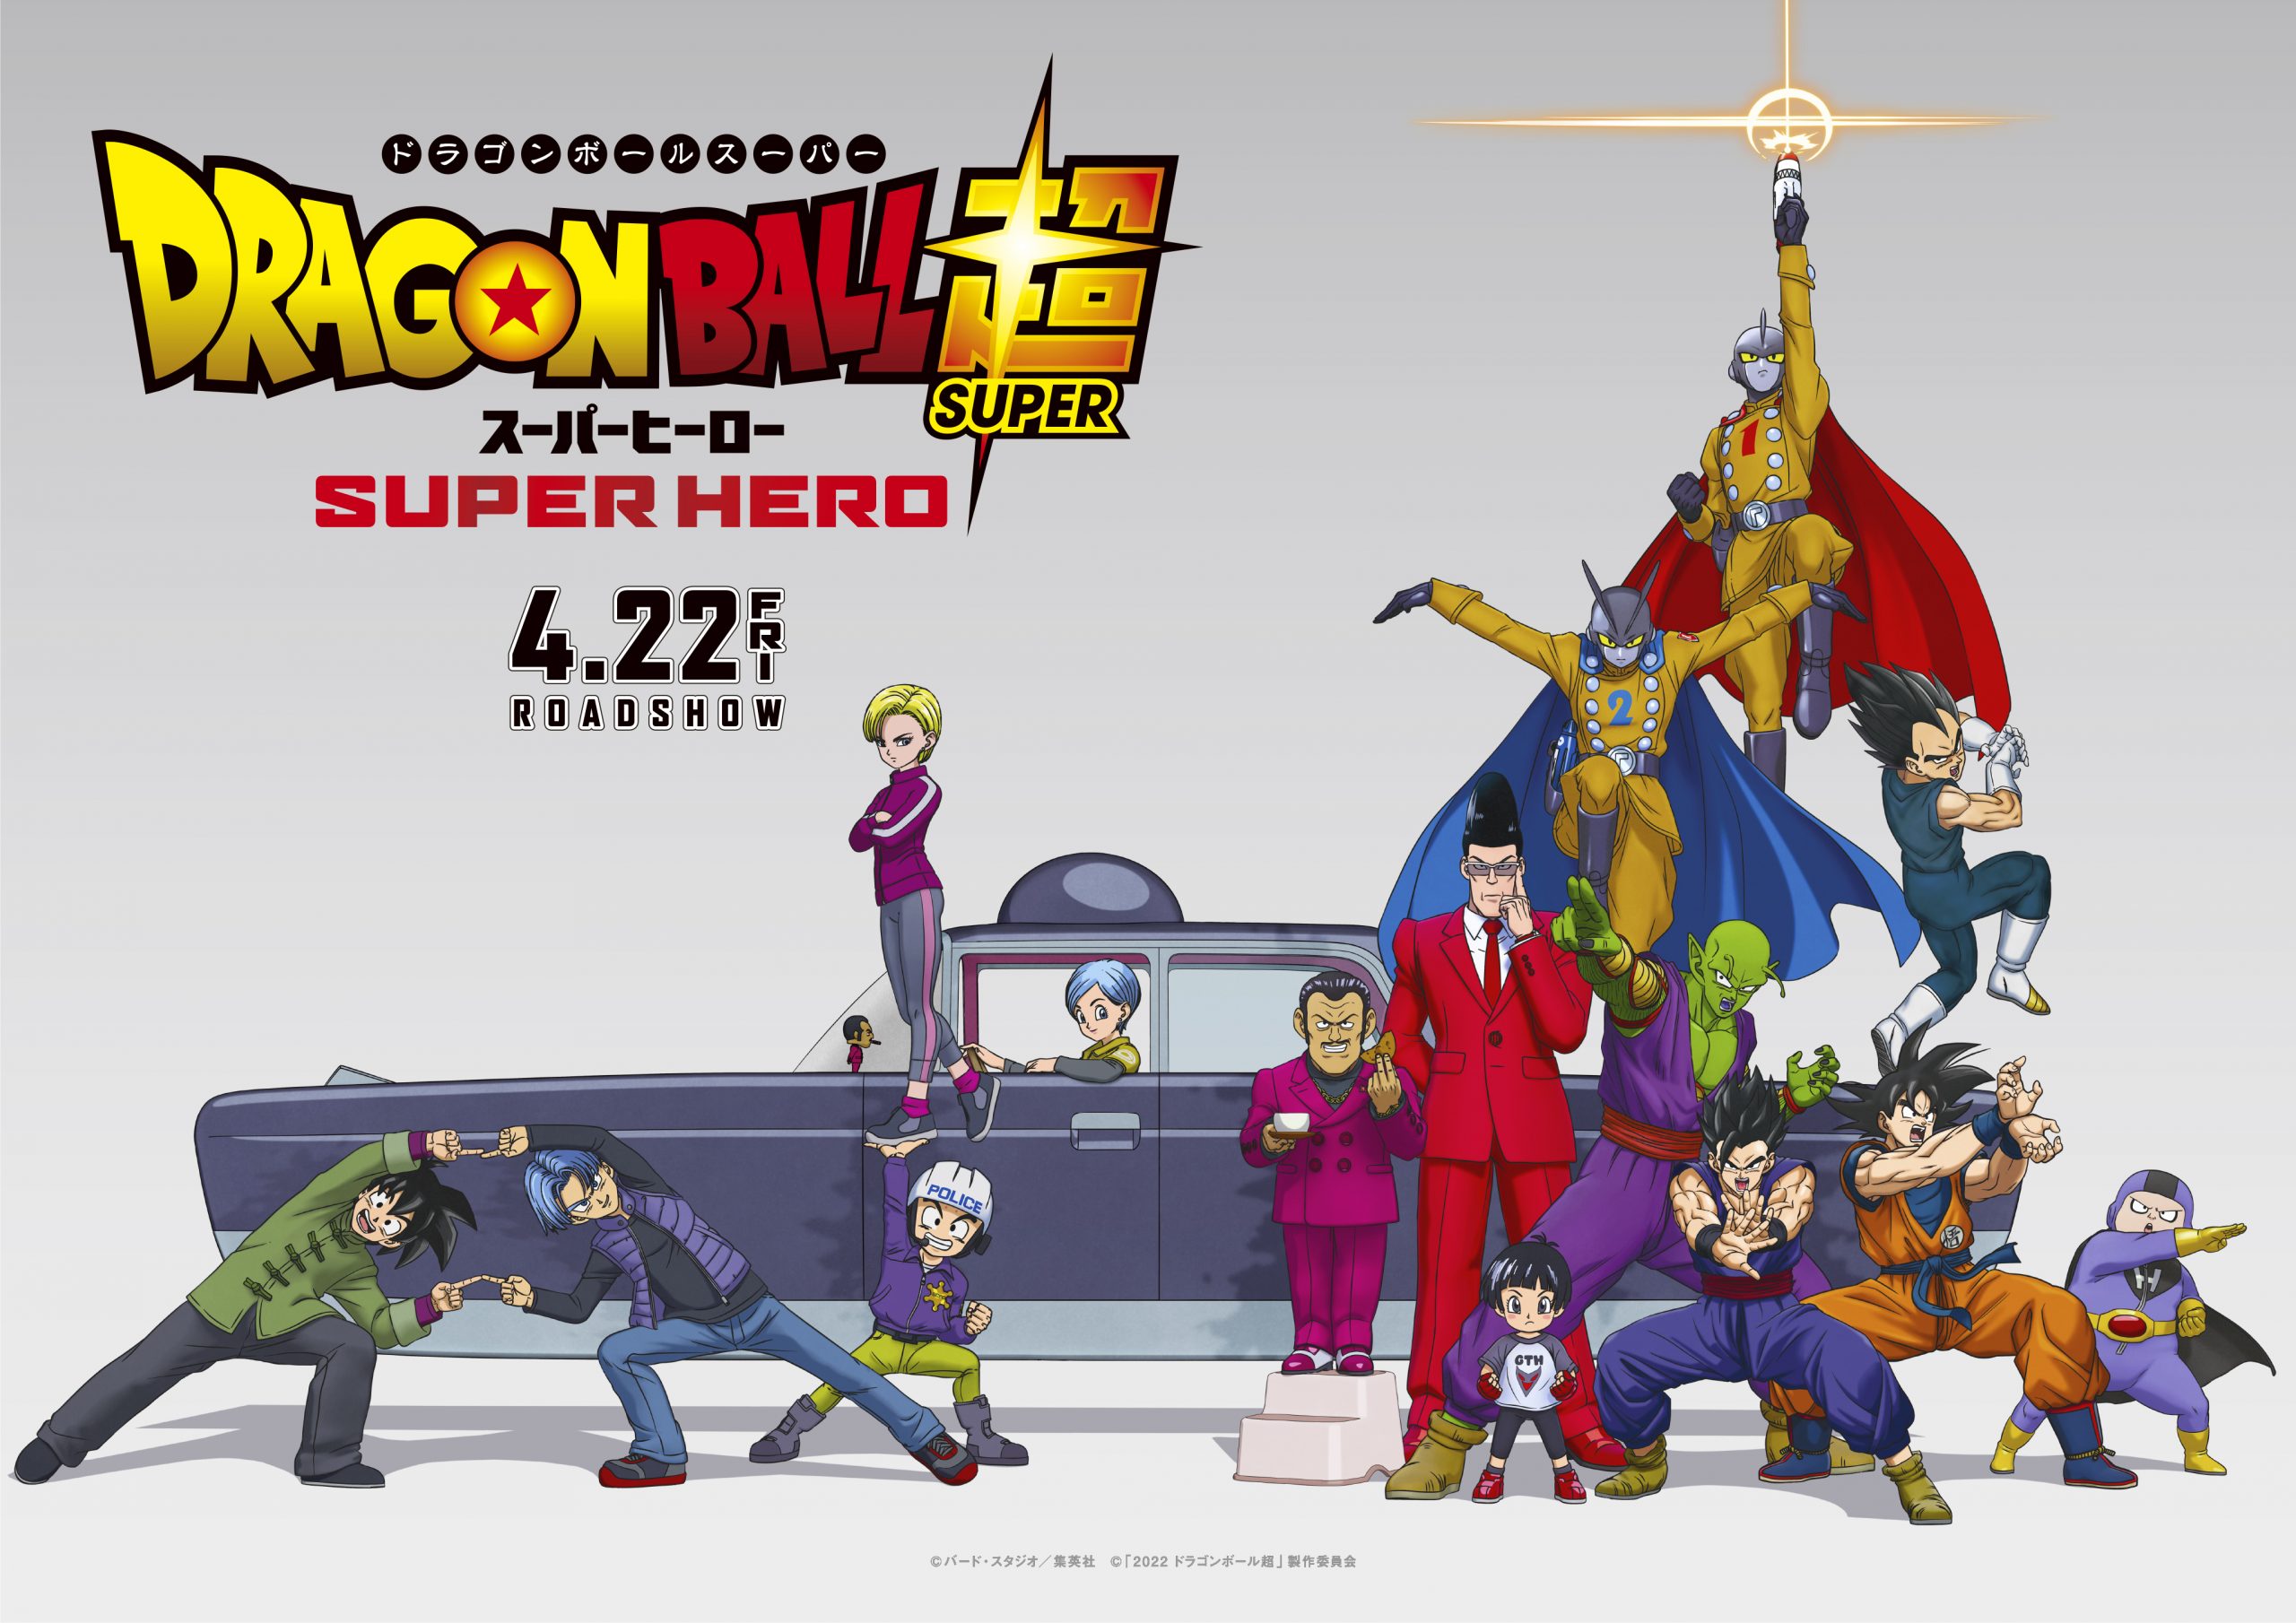 Dragon Ball Super: Super Herói bate nova marca de ingressos no Japão